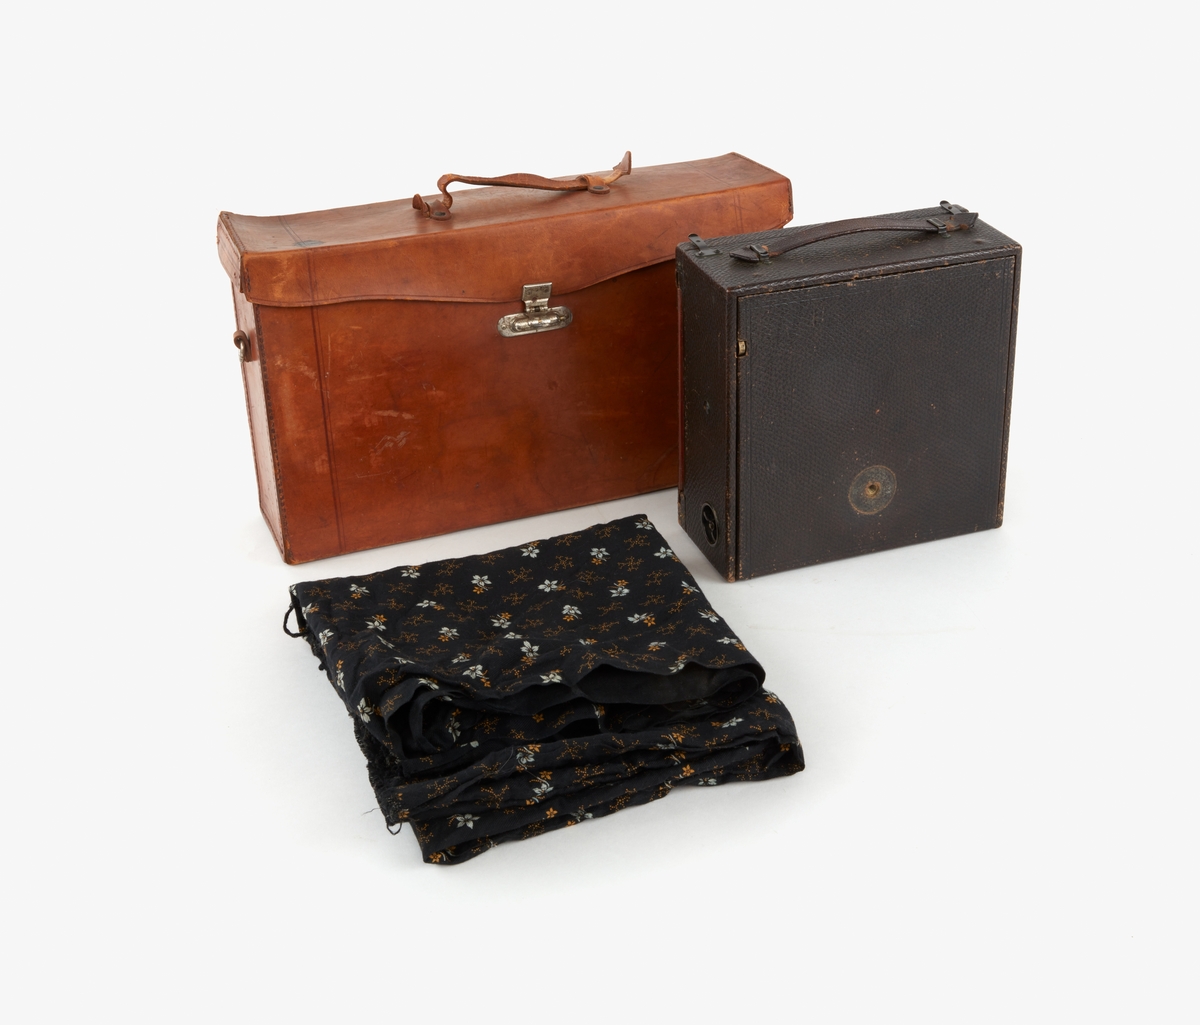 Portabel bälgkamera som förvaras i en svart låda som ligger i väska av ljust skinn. Text: TELE-PHOTO POCO. Väskan saknar axelrem.